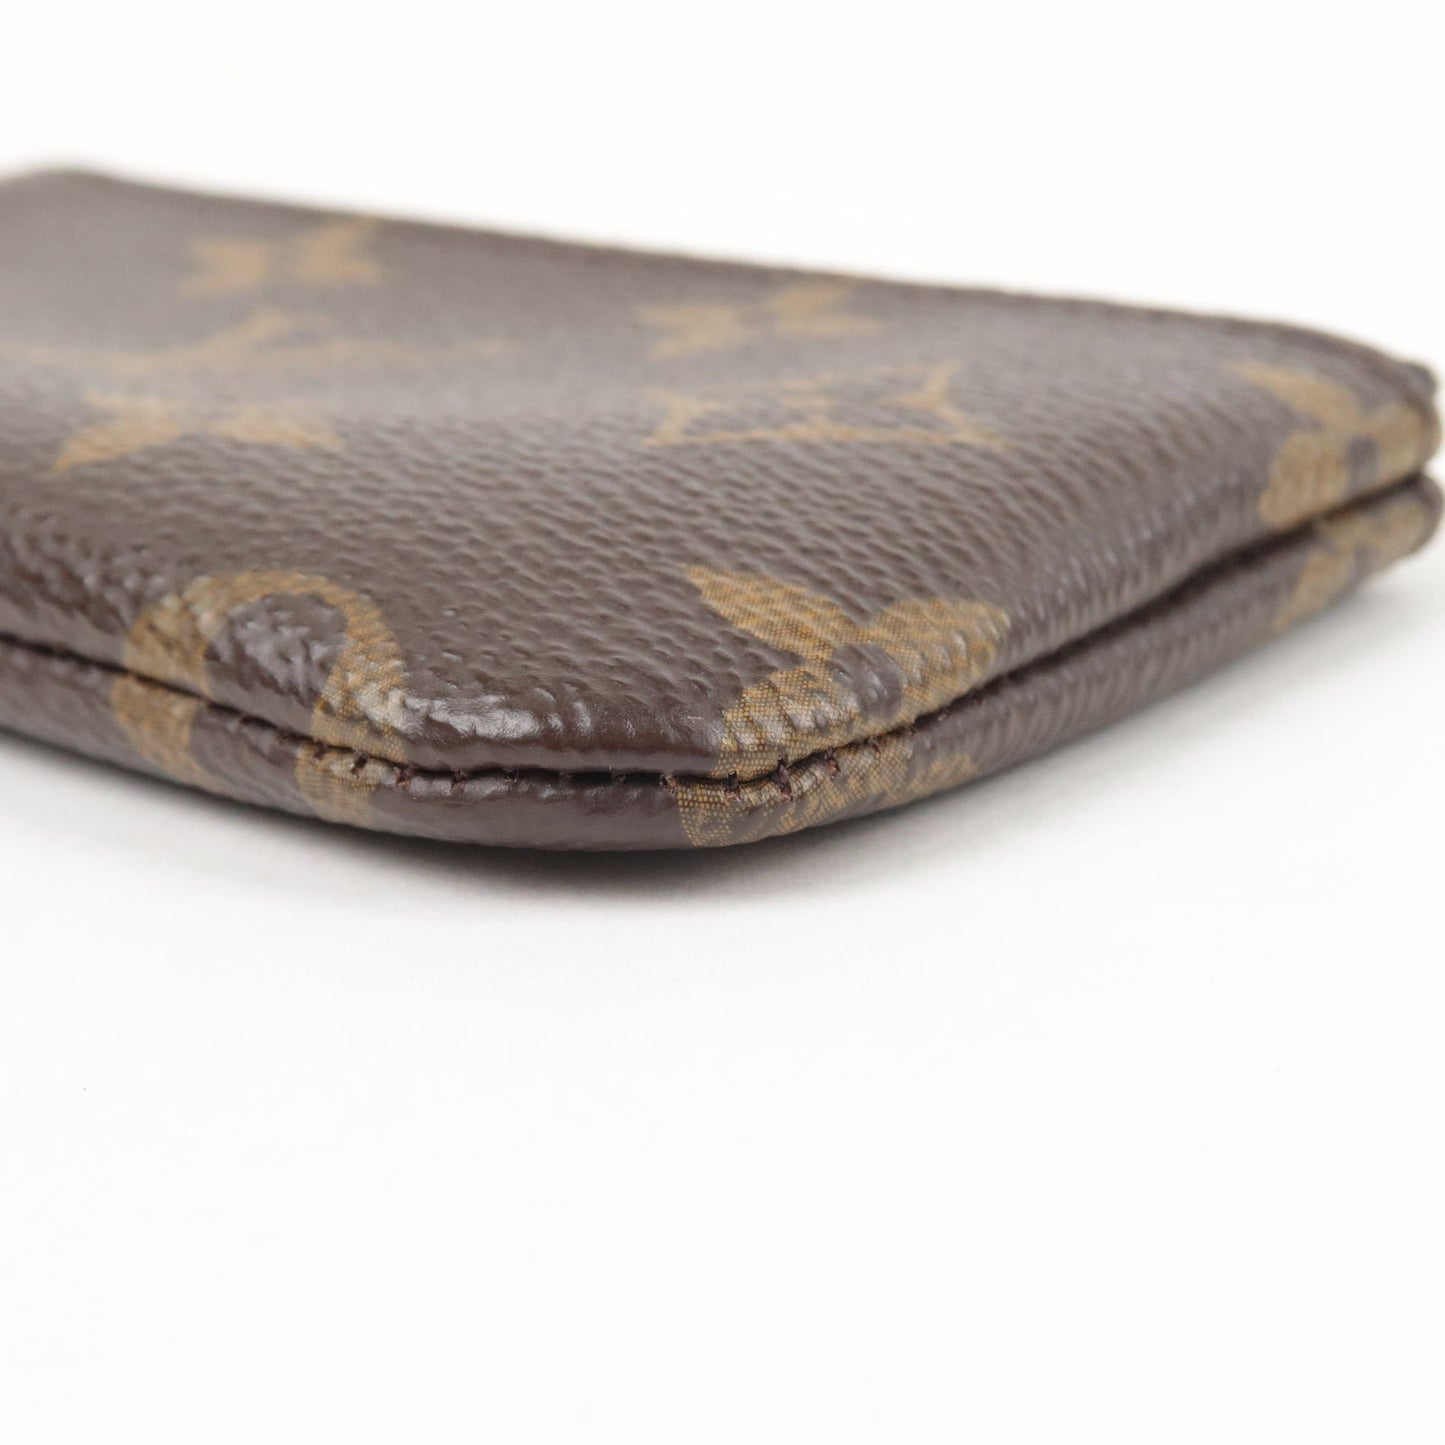 Louis Vuitton Pochette Cles Coin Wallet Monogram M62650 – AMORE